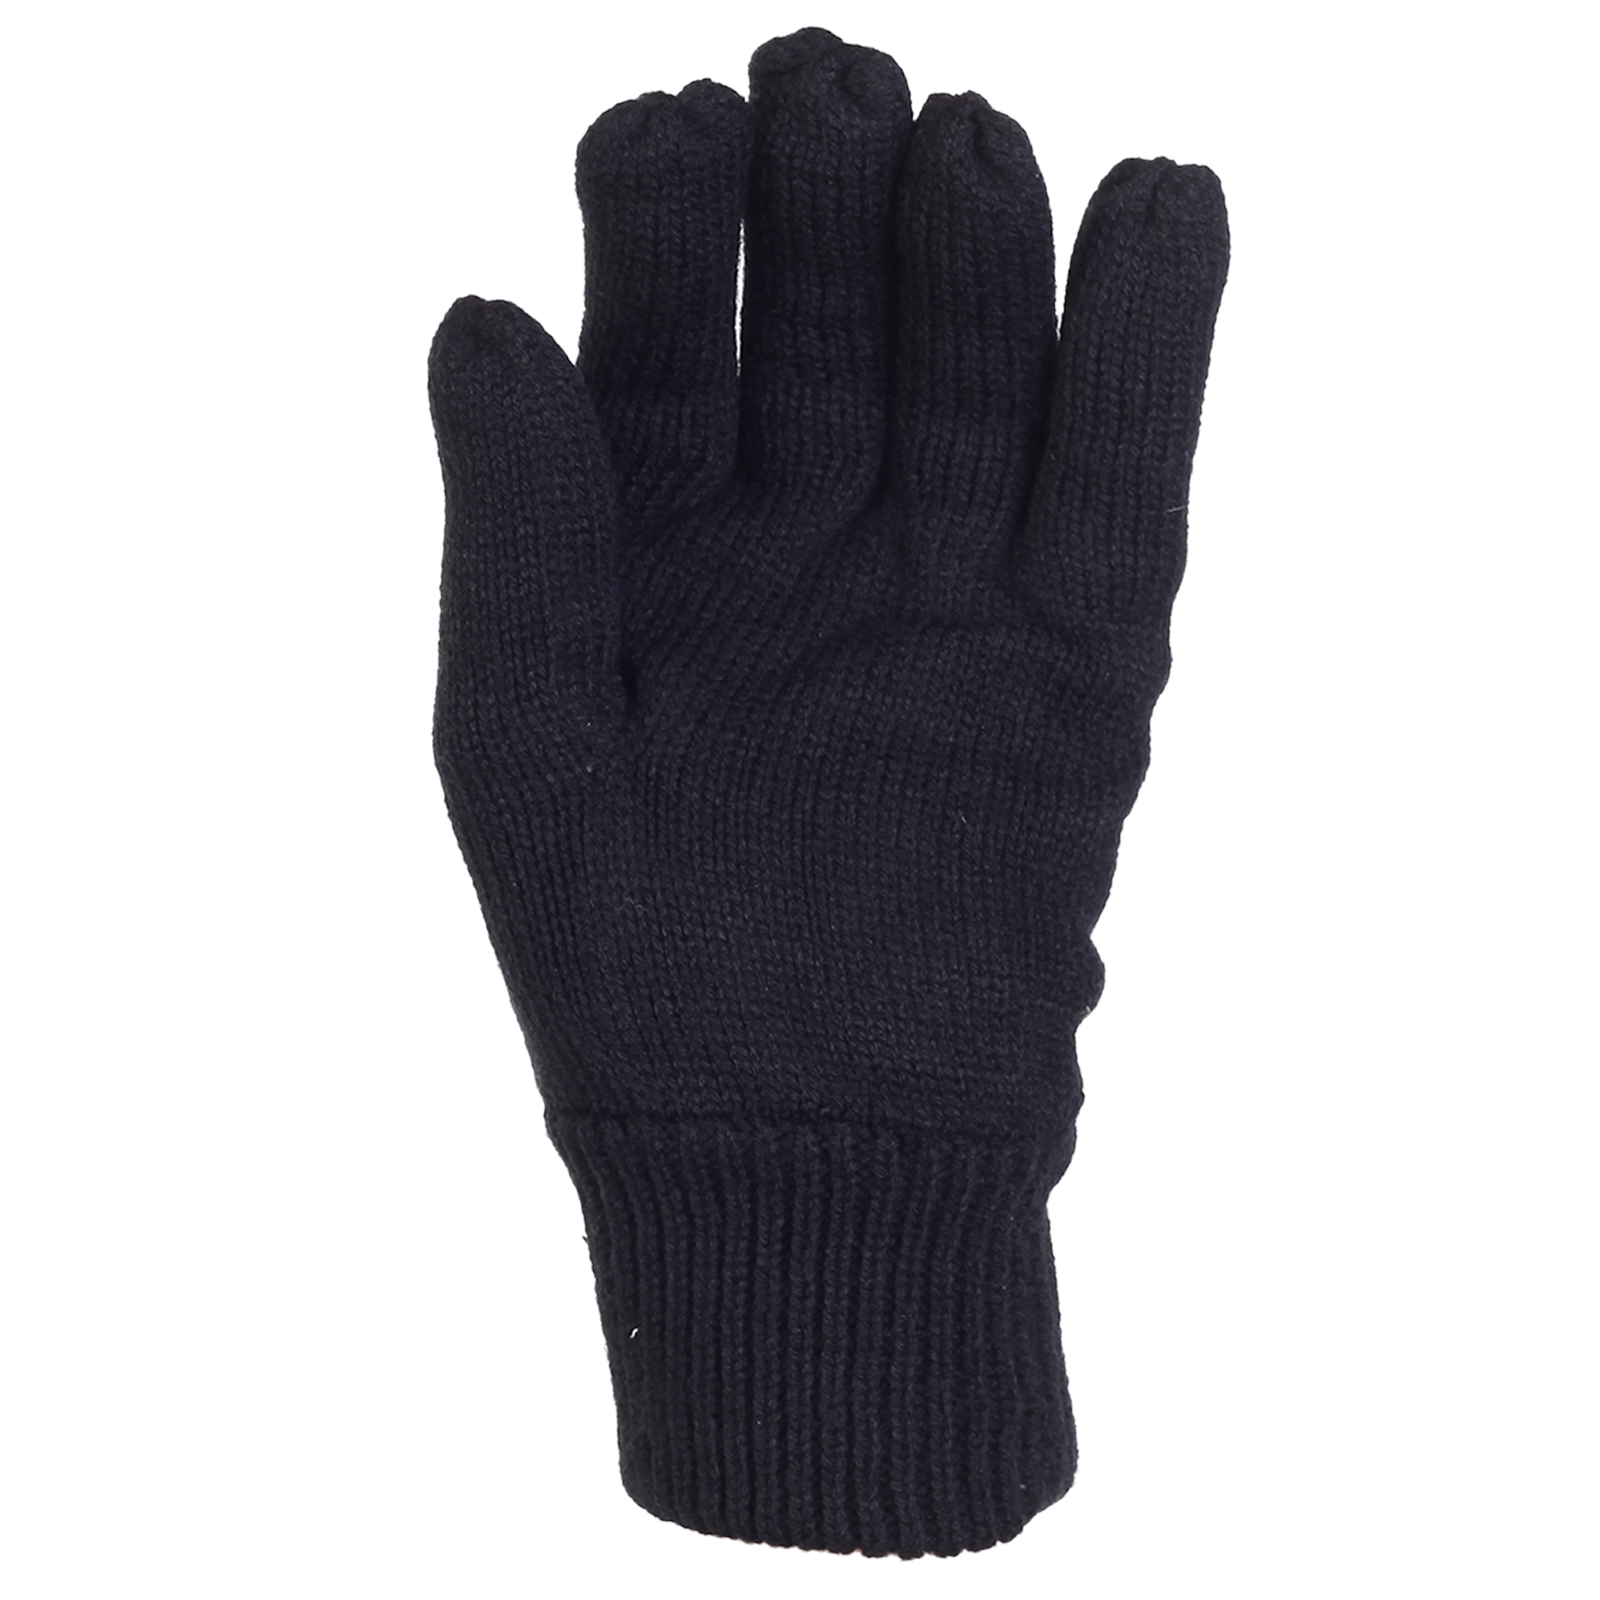 Отличные мужские теплые перчатки Thinsulate 